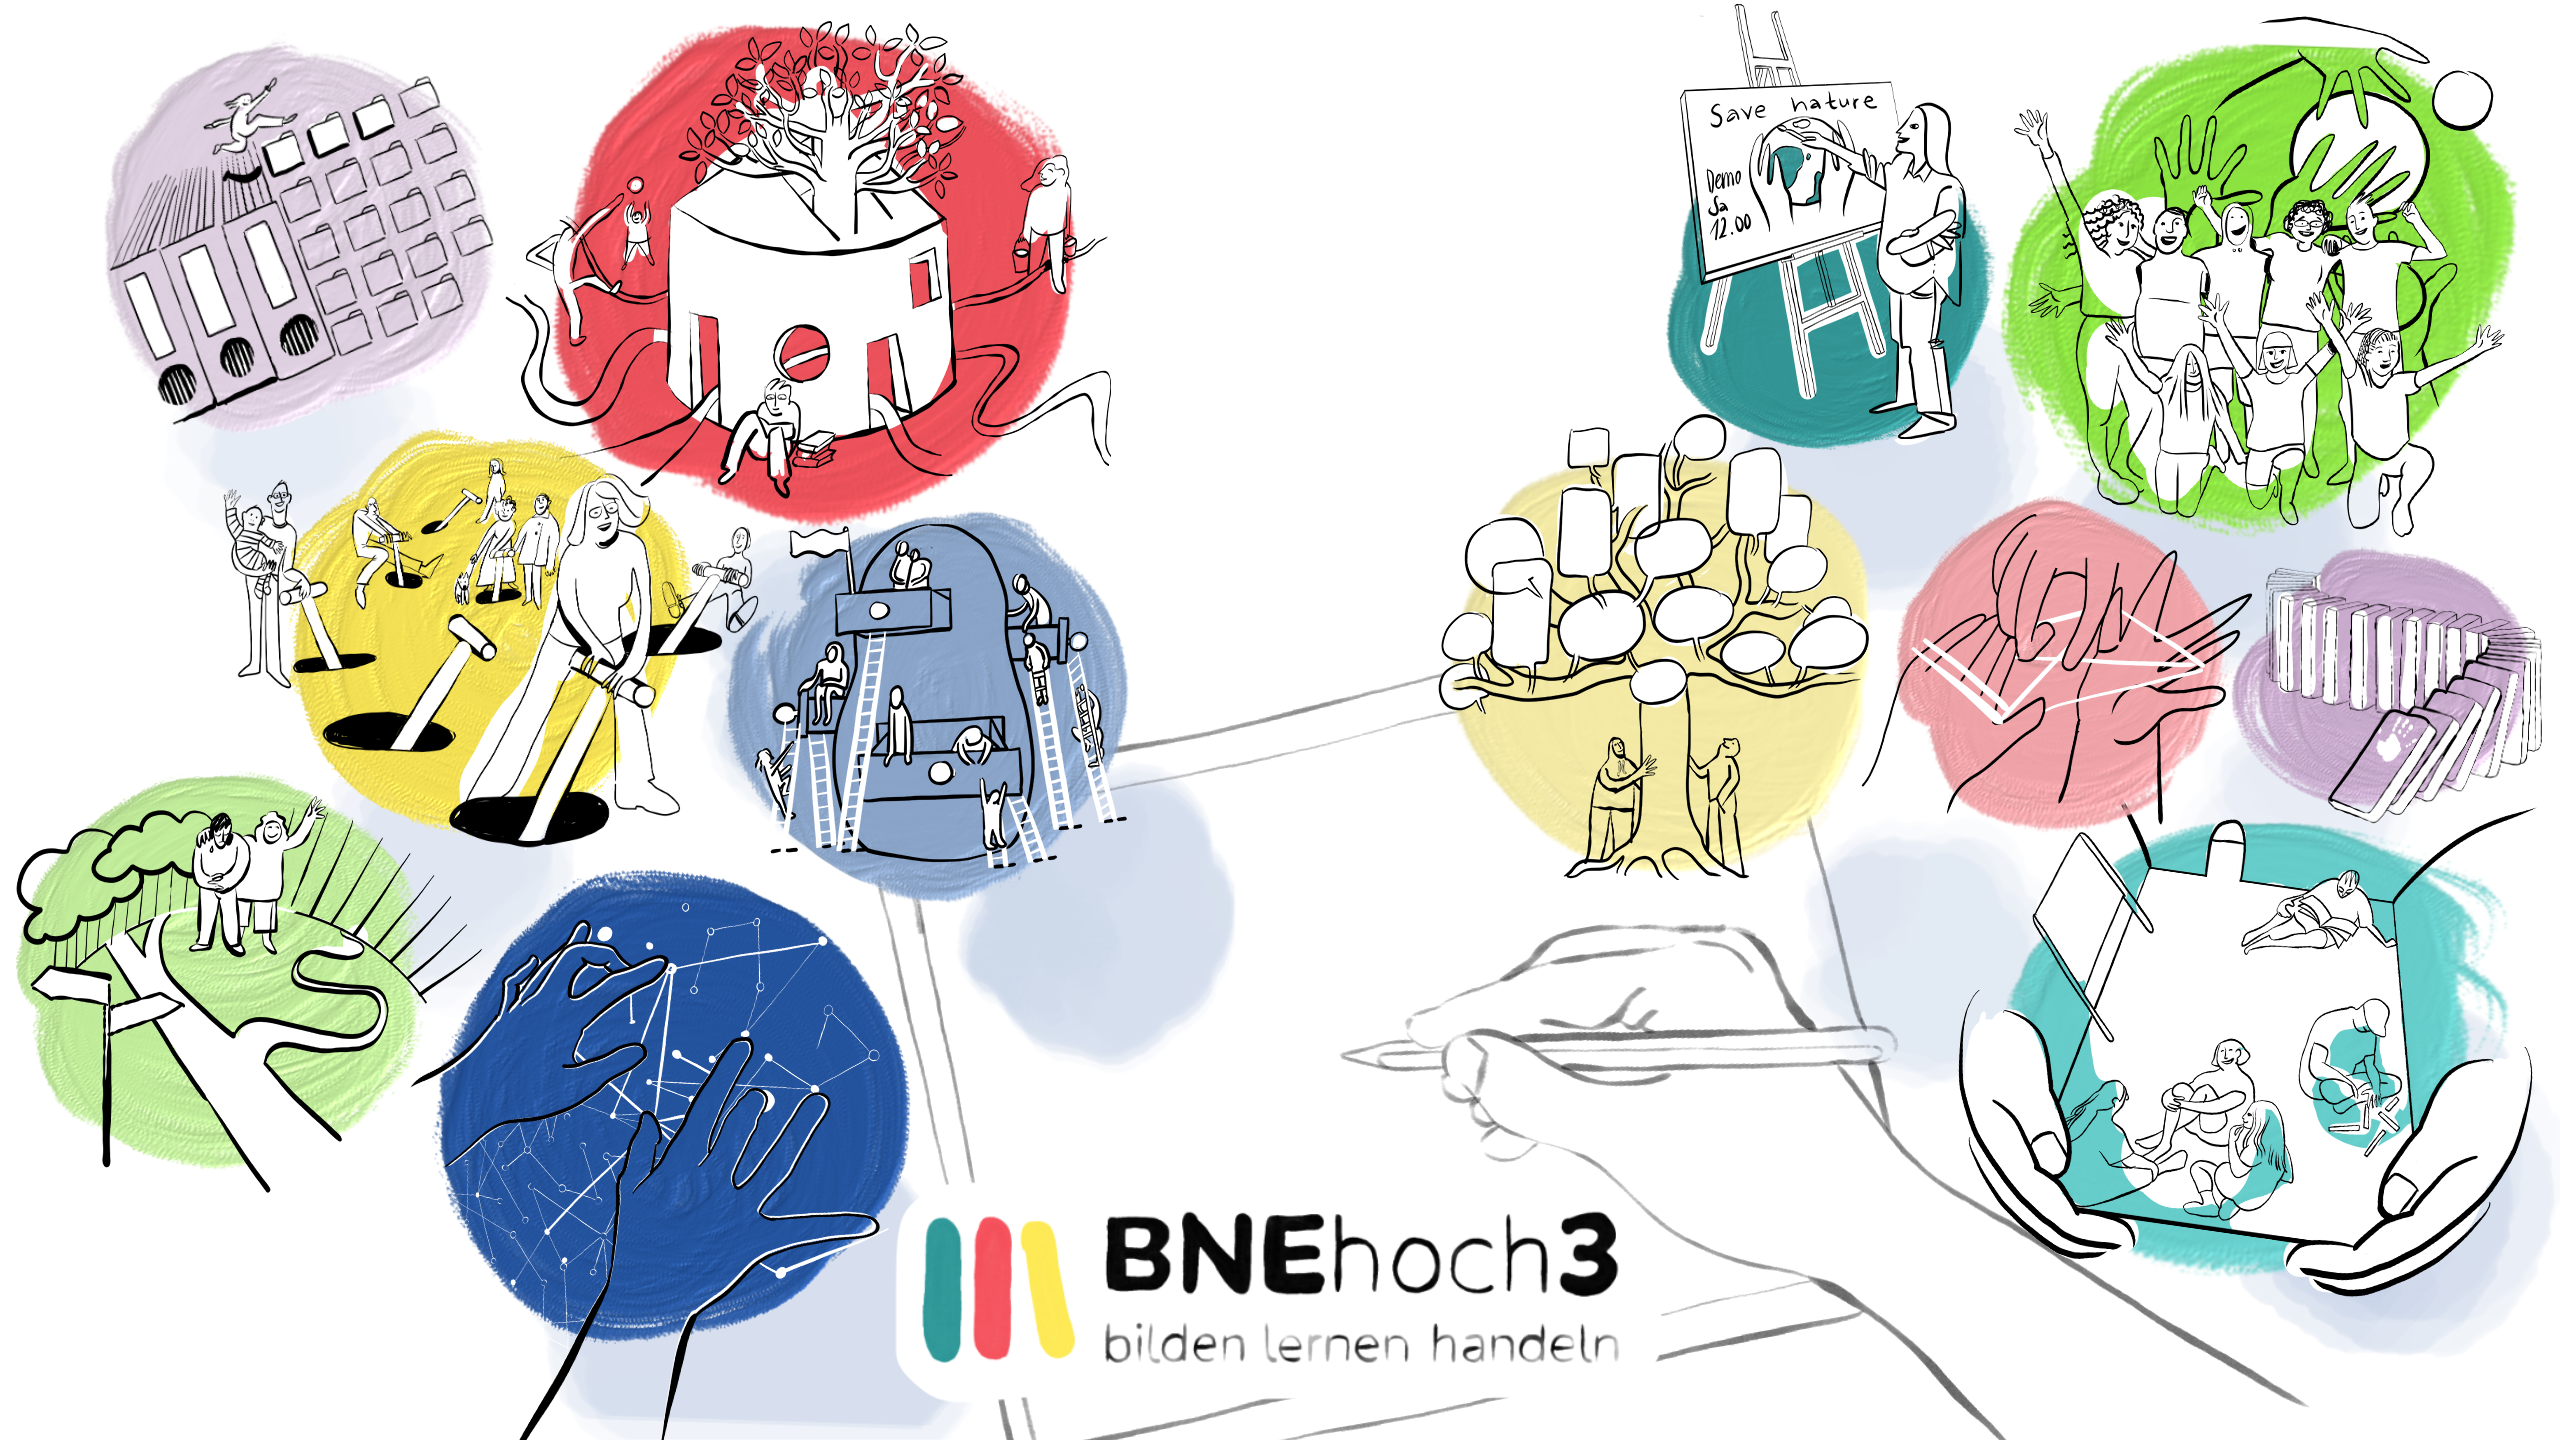 Gezeichnete Grafik mit dem Titel "BNEhoch3" mit mehreren Kreisen, die unterschiedliche soziale Situationen zeigen.